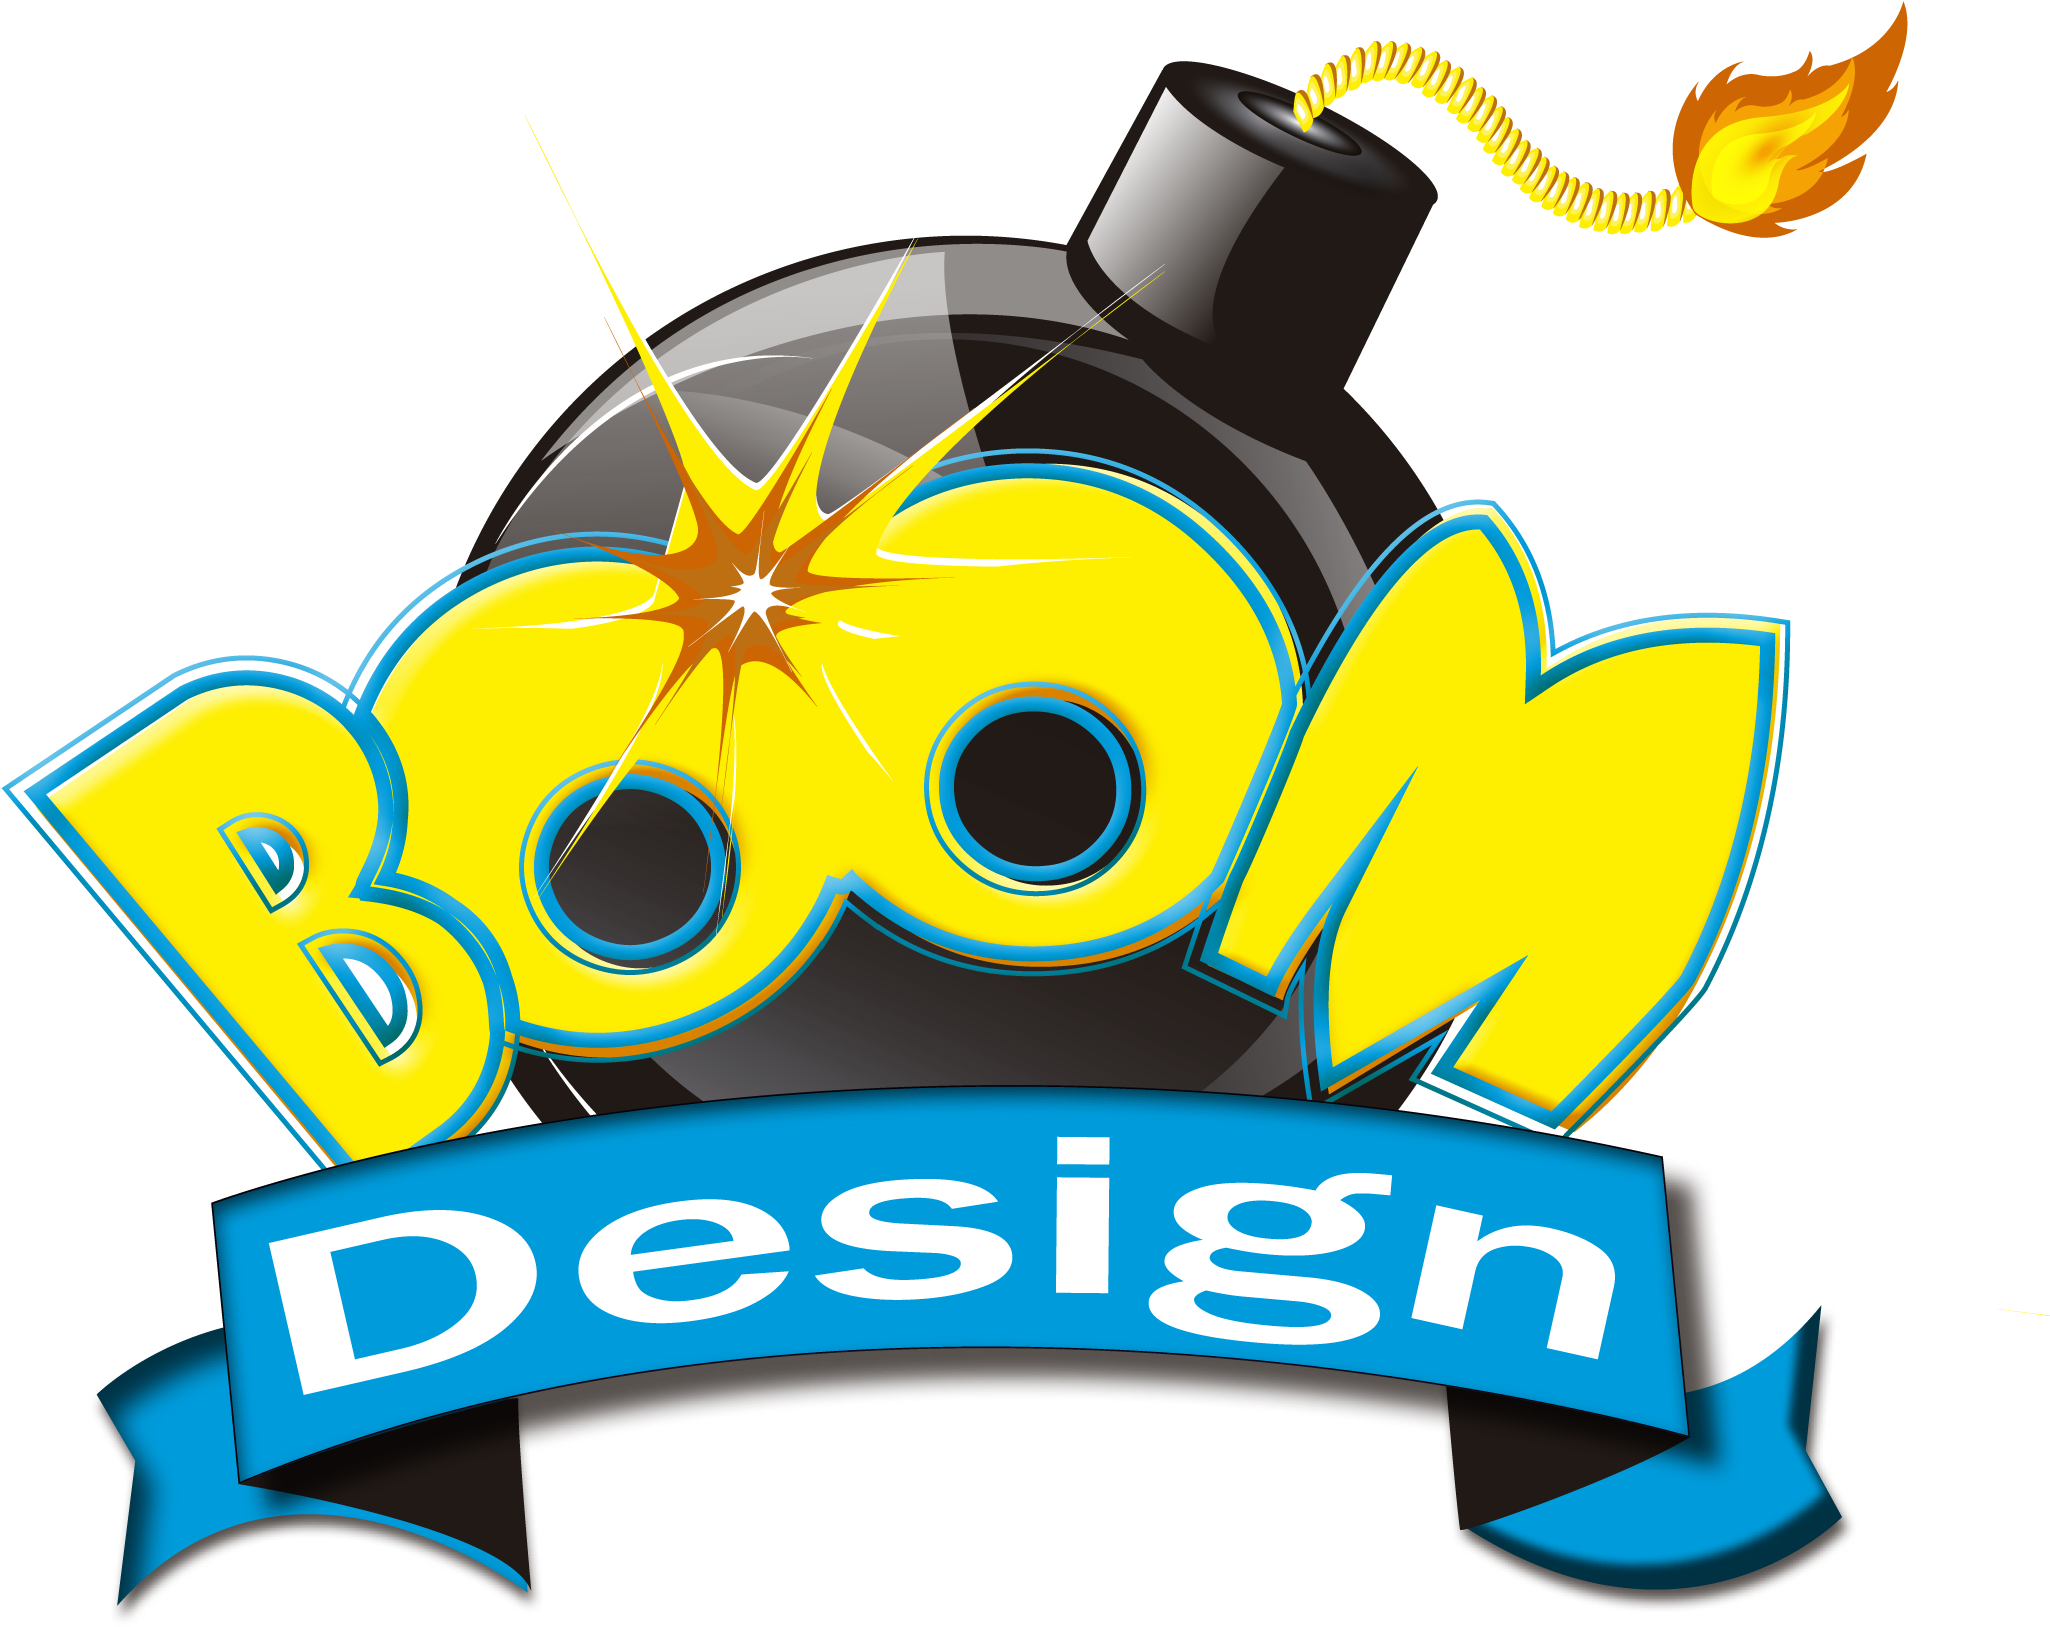 A Logo Of A Bomb